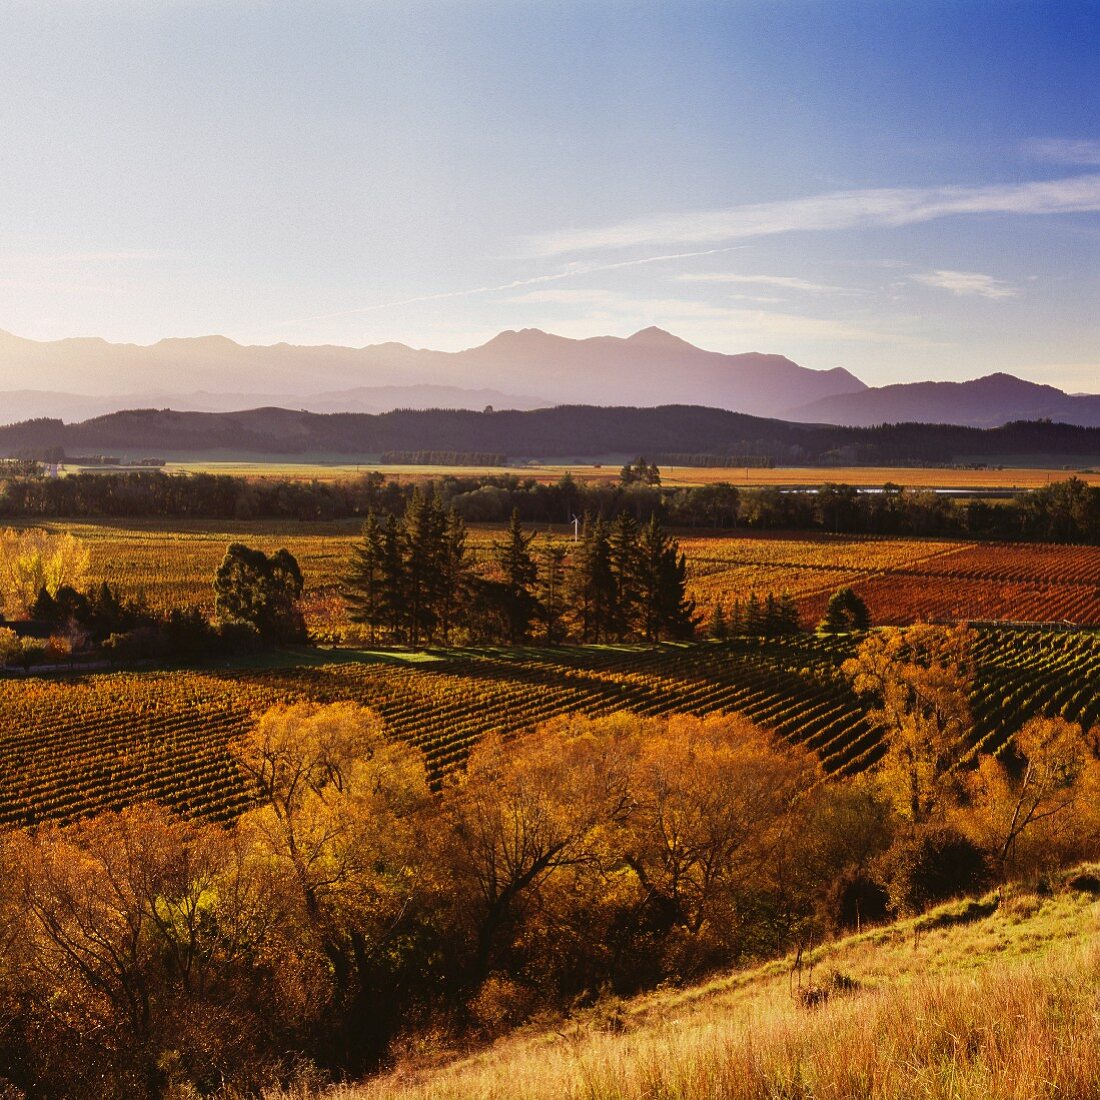 Herbstliche Weinberge von Little Beauty im Waihopai Valley, Marlborough, Neuseeland